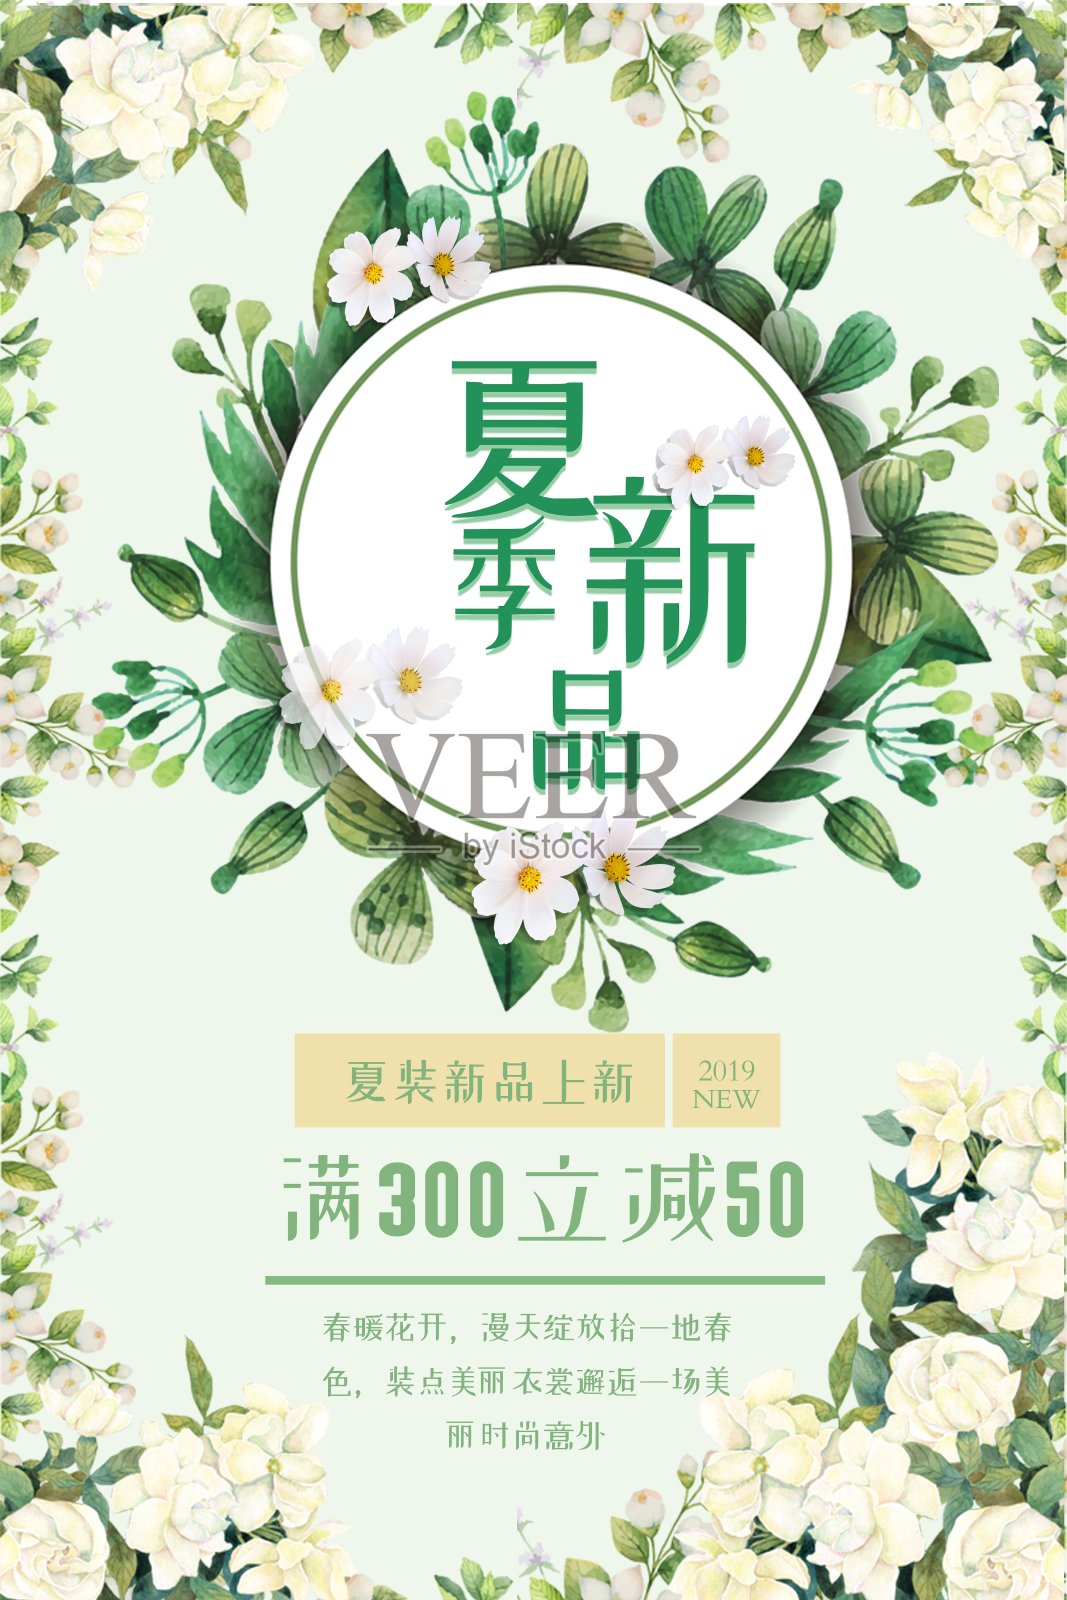 清新文艺美丽夏天花卉促销海报设计模板素材